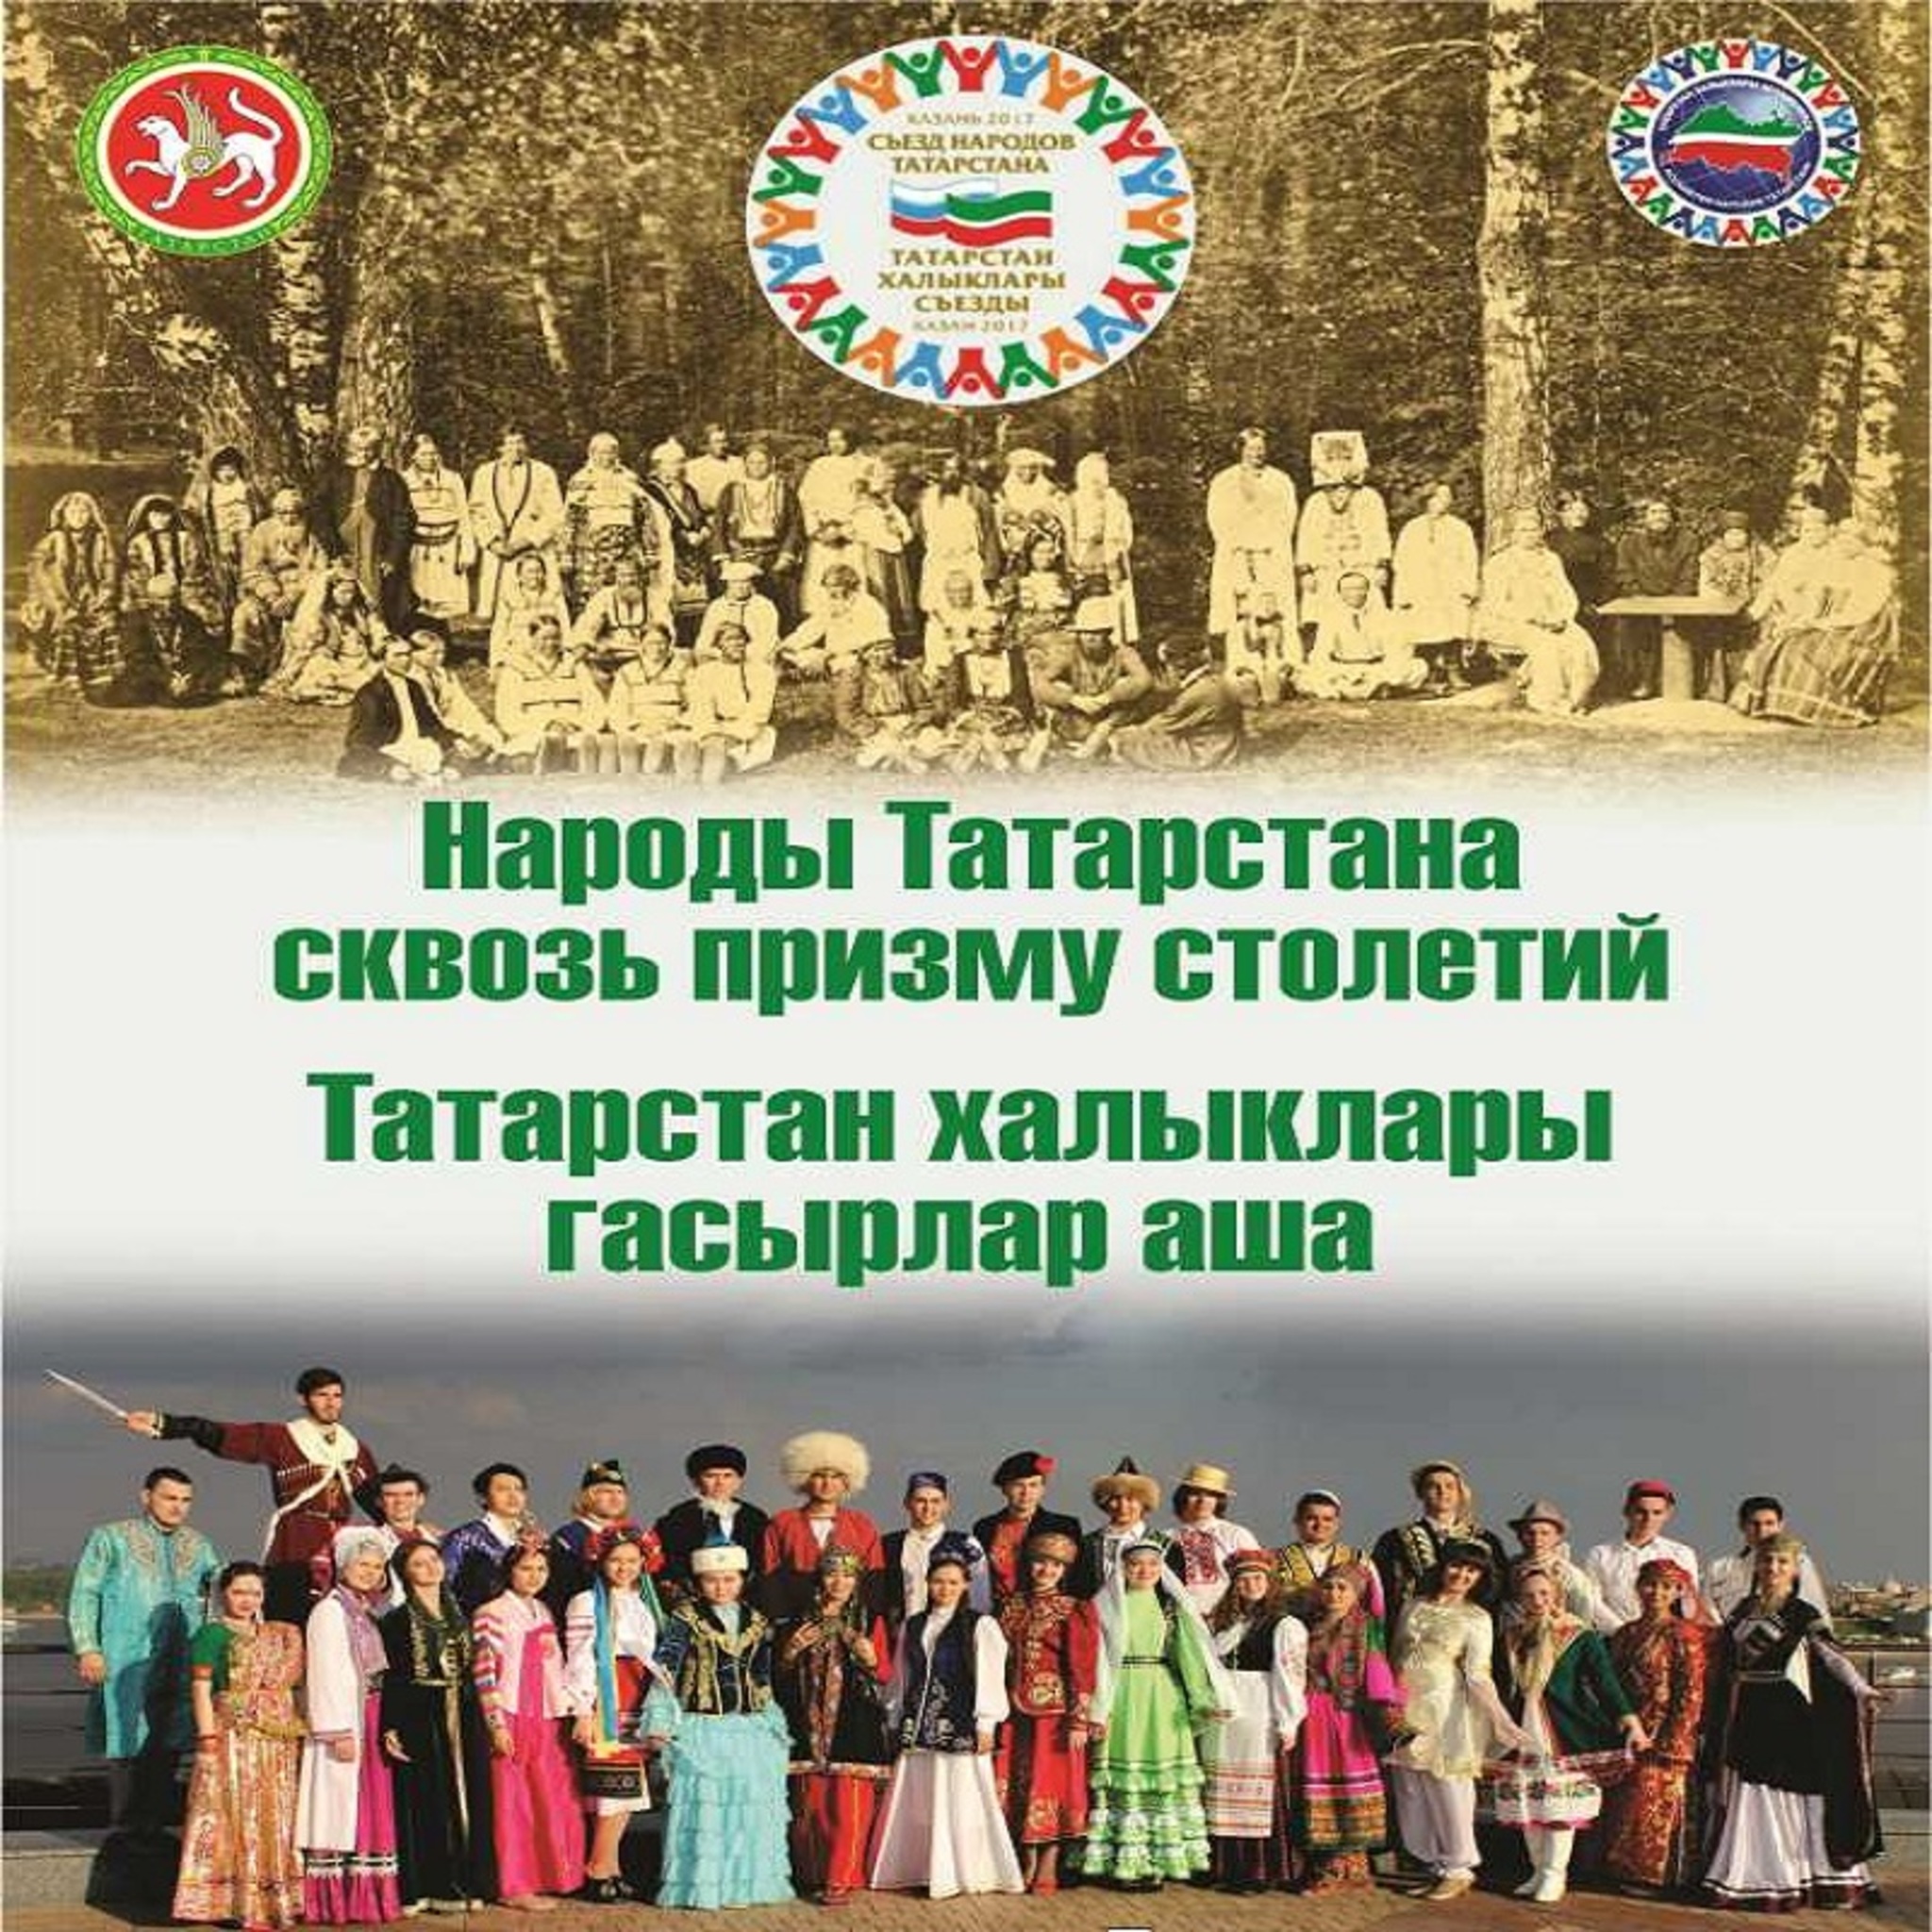 Народы Татарстана презентация